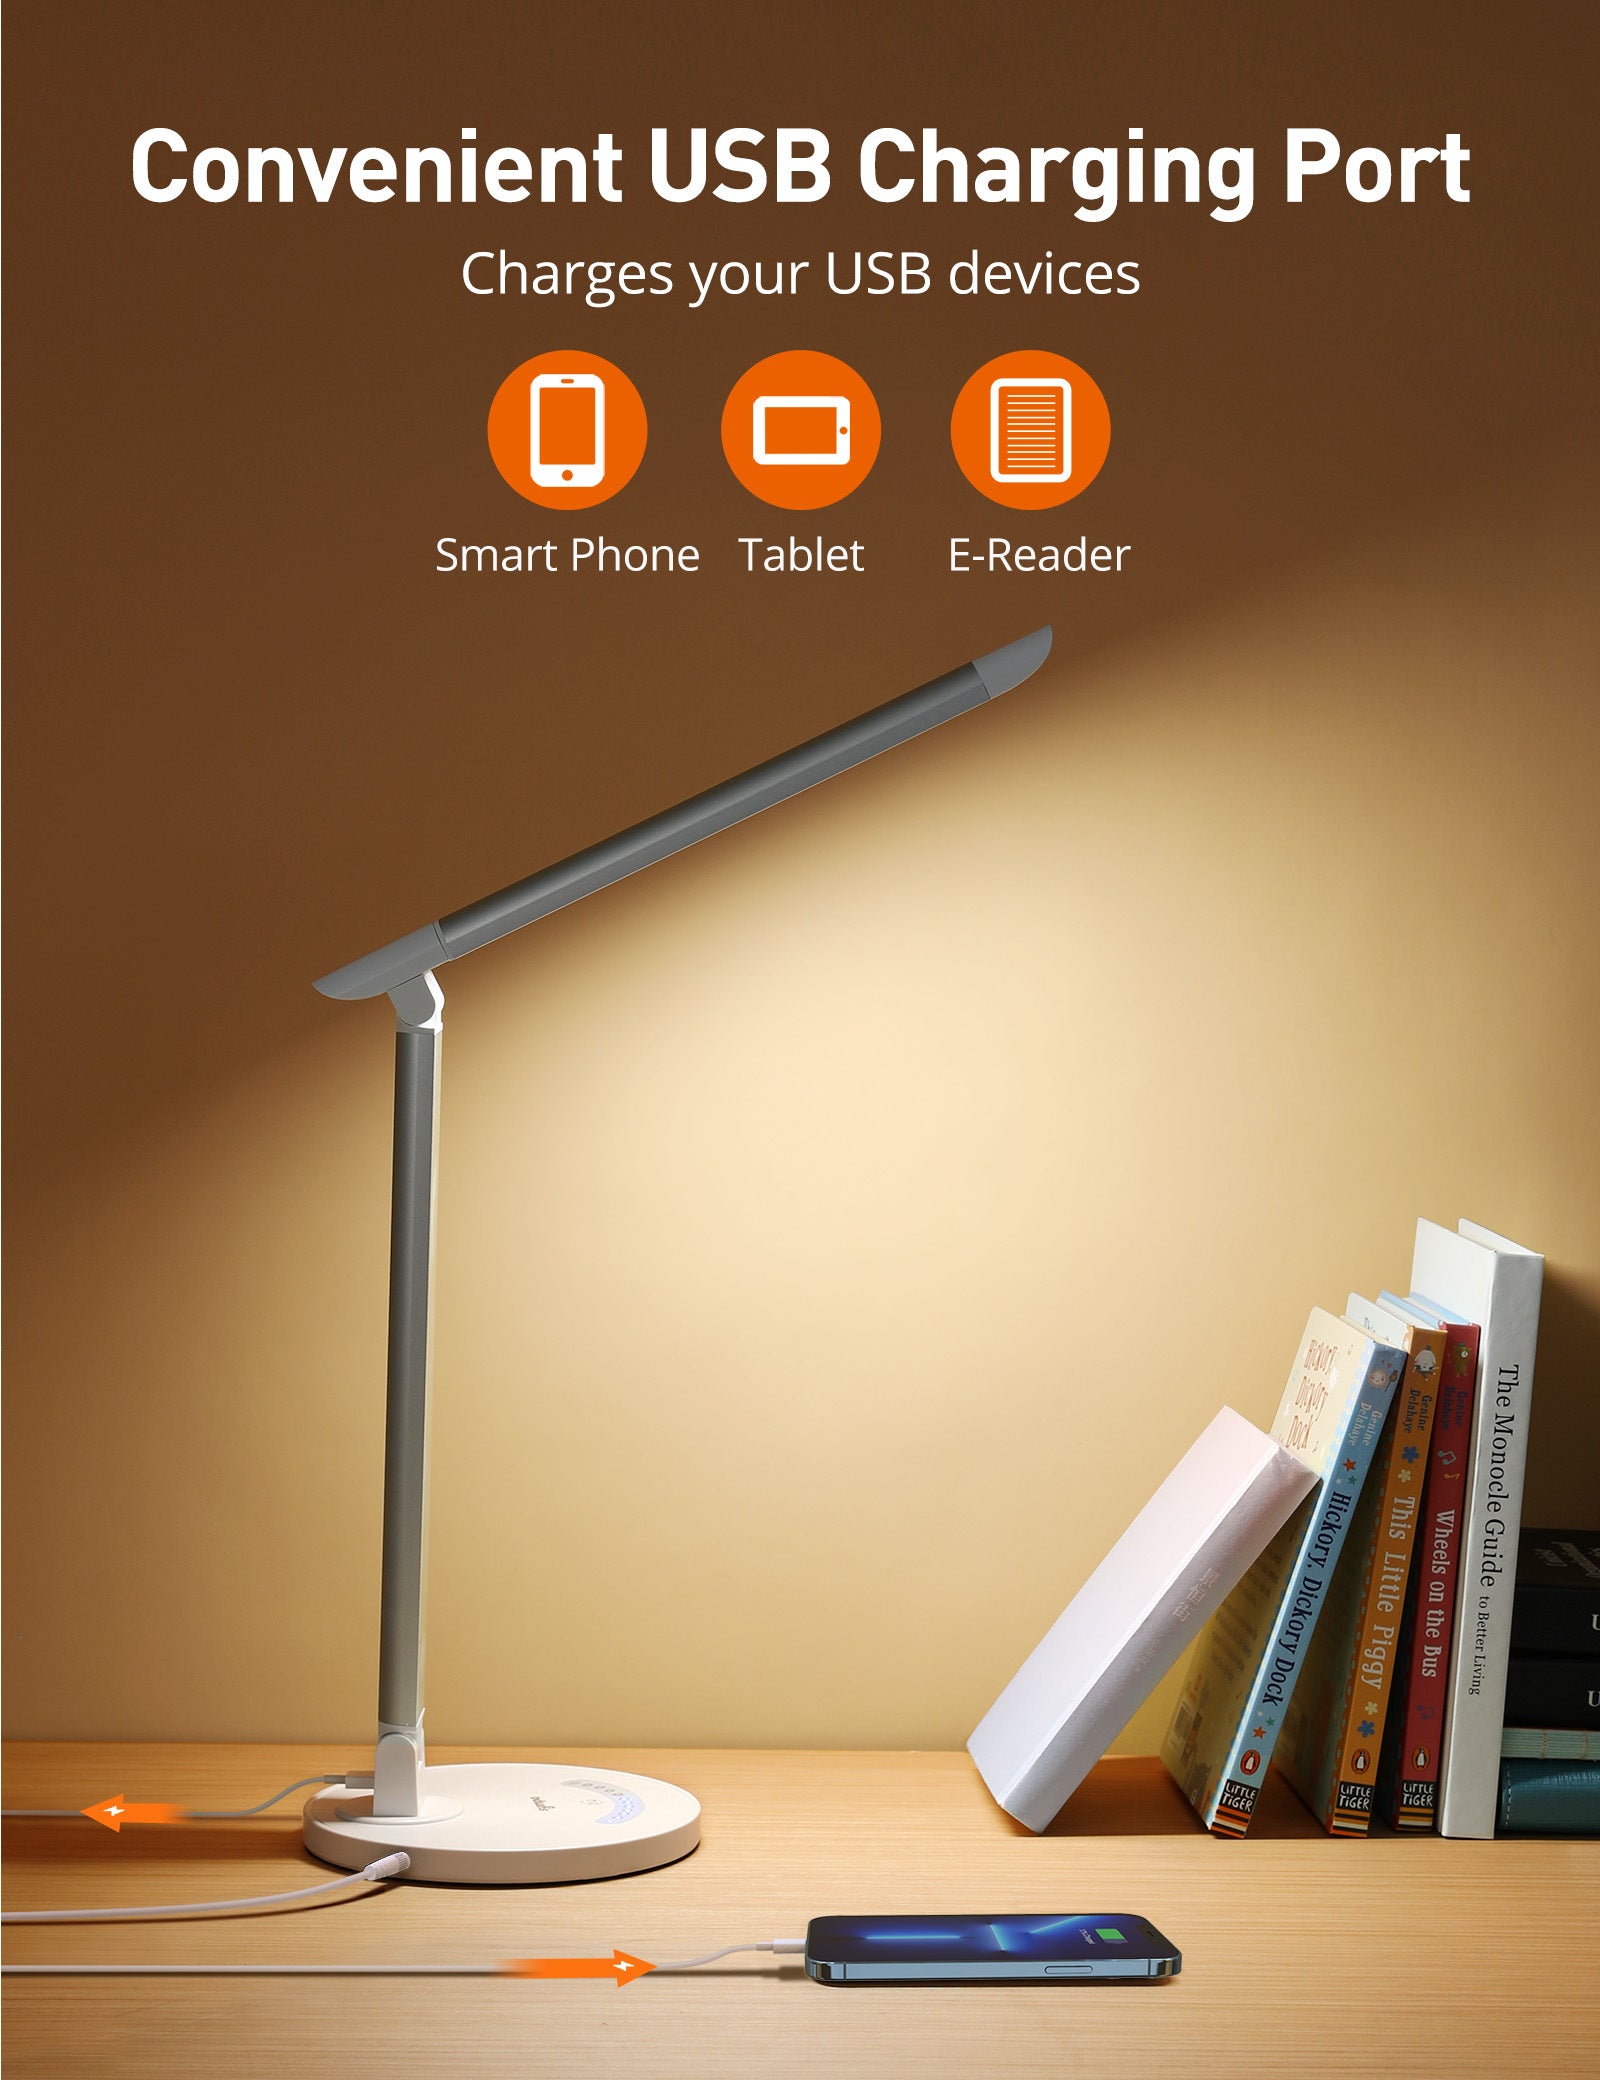 LED Desk Lamp antique white-led lighting-3100k-4200k(neutral